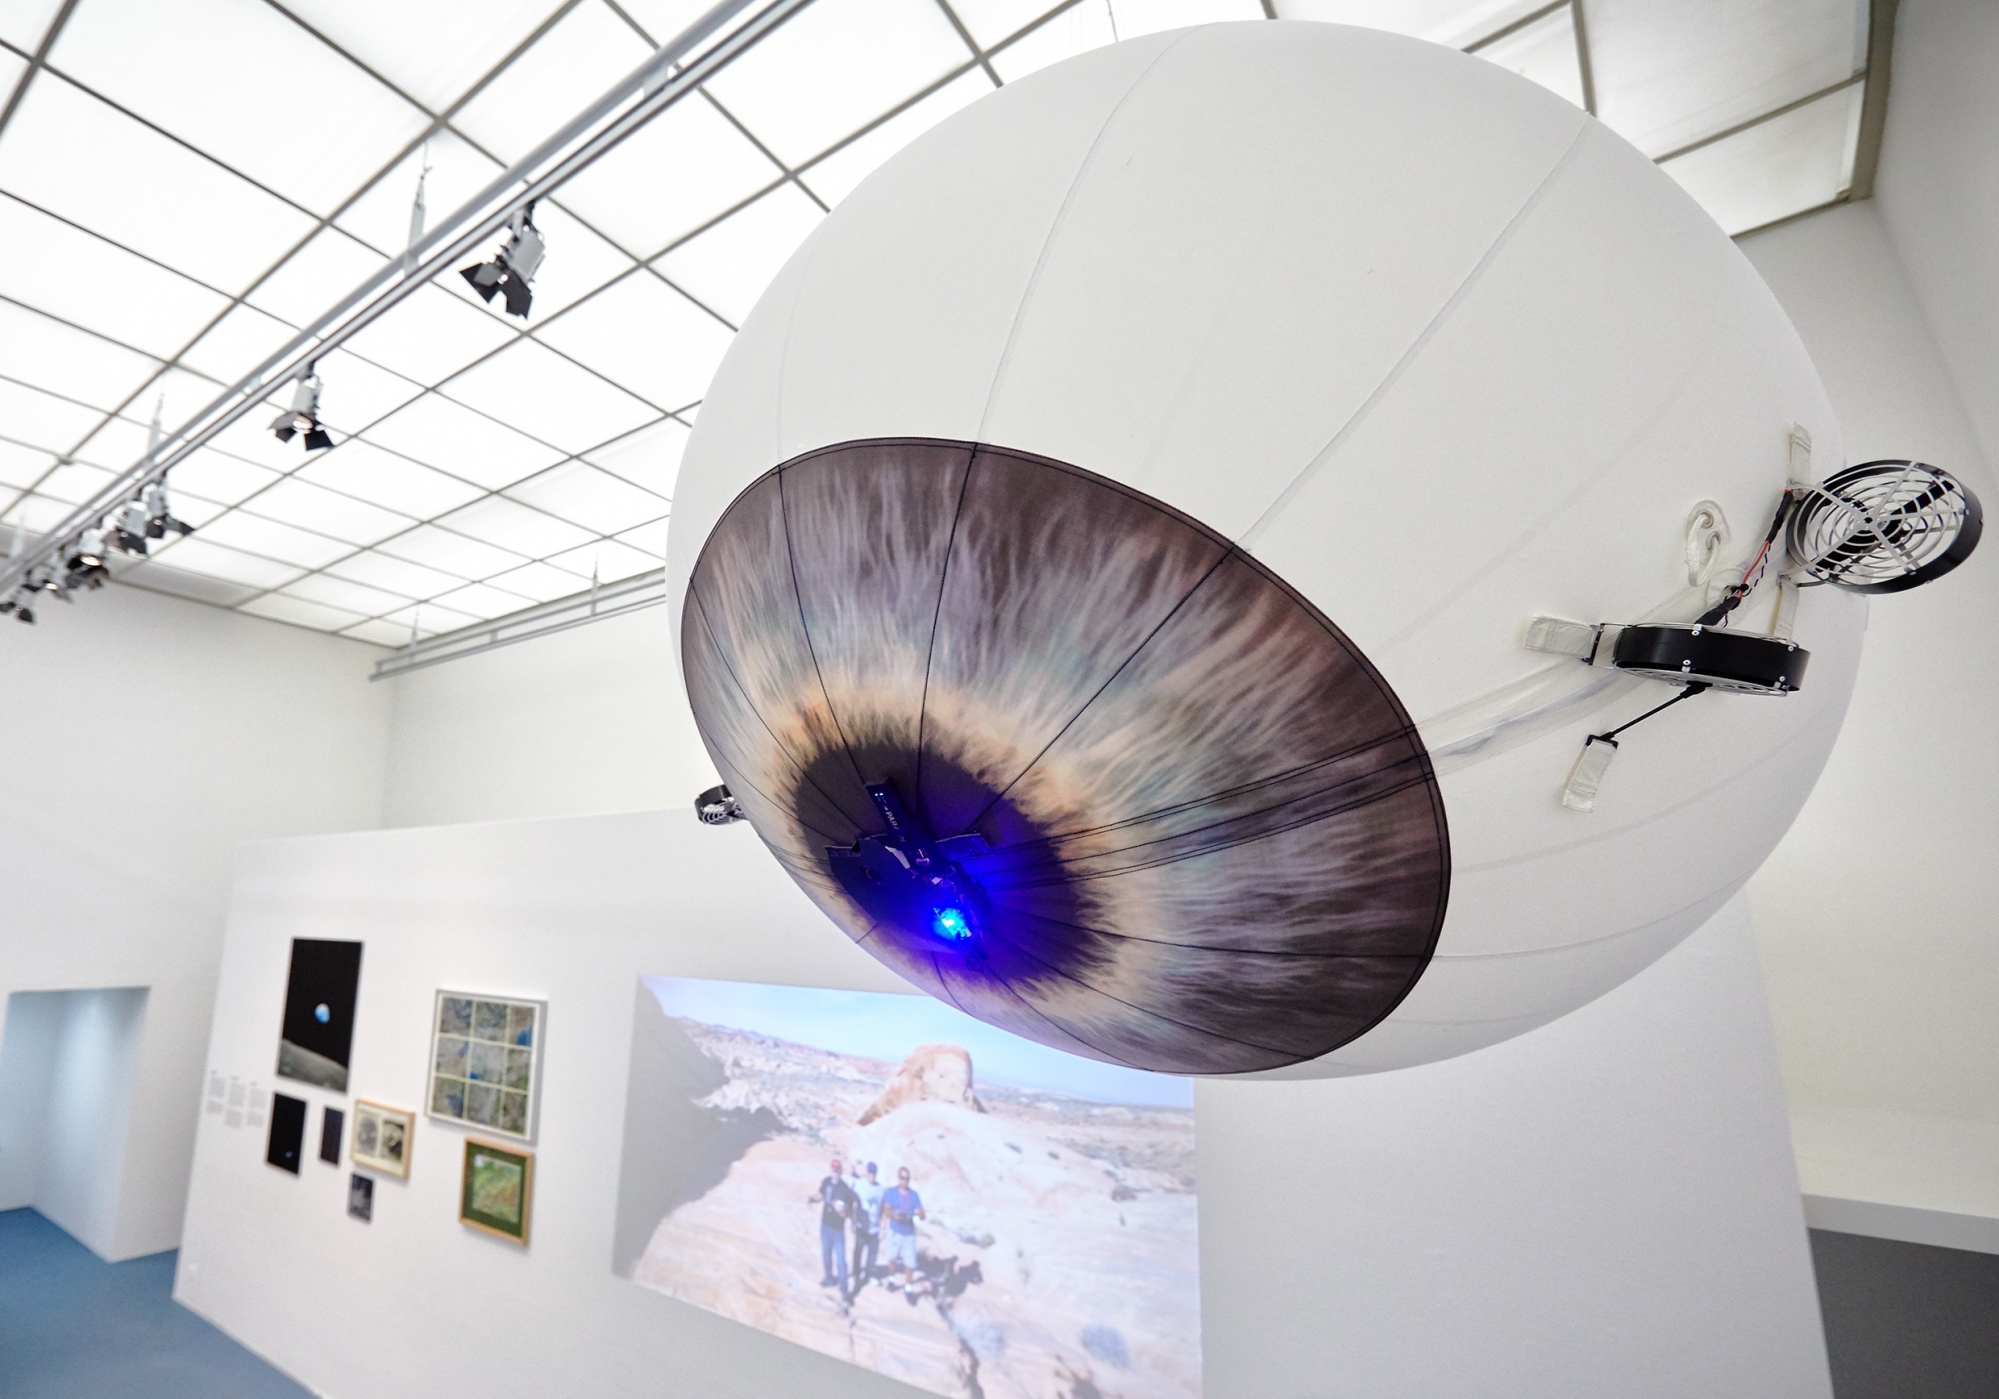 L'exposition jette un regard sur l'histoire de la photographie aérienne suisse et propose également des activités interactives.